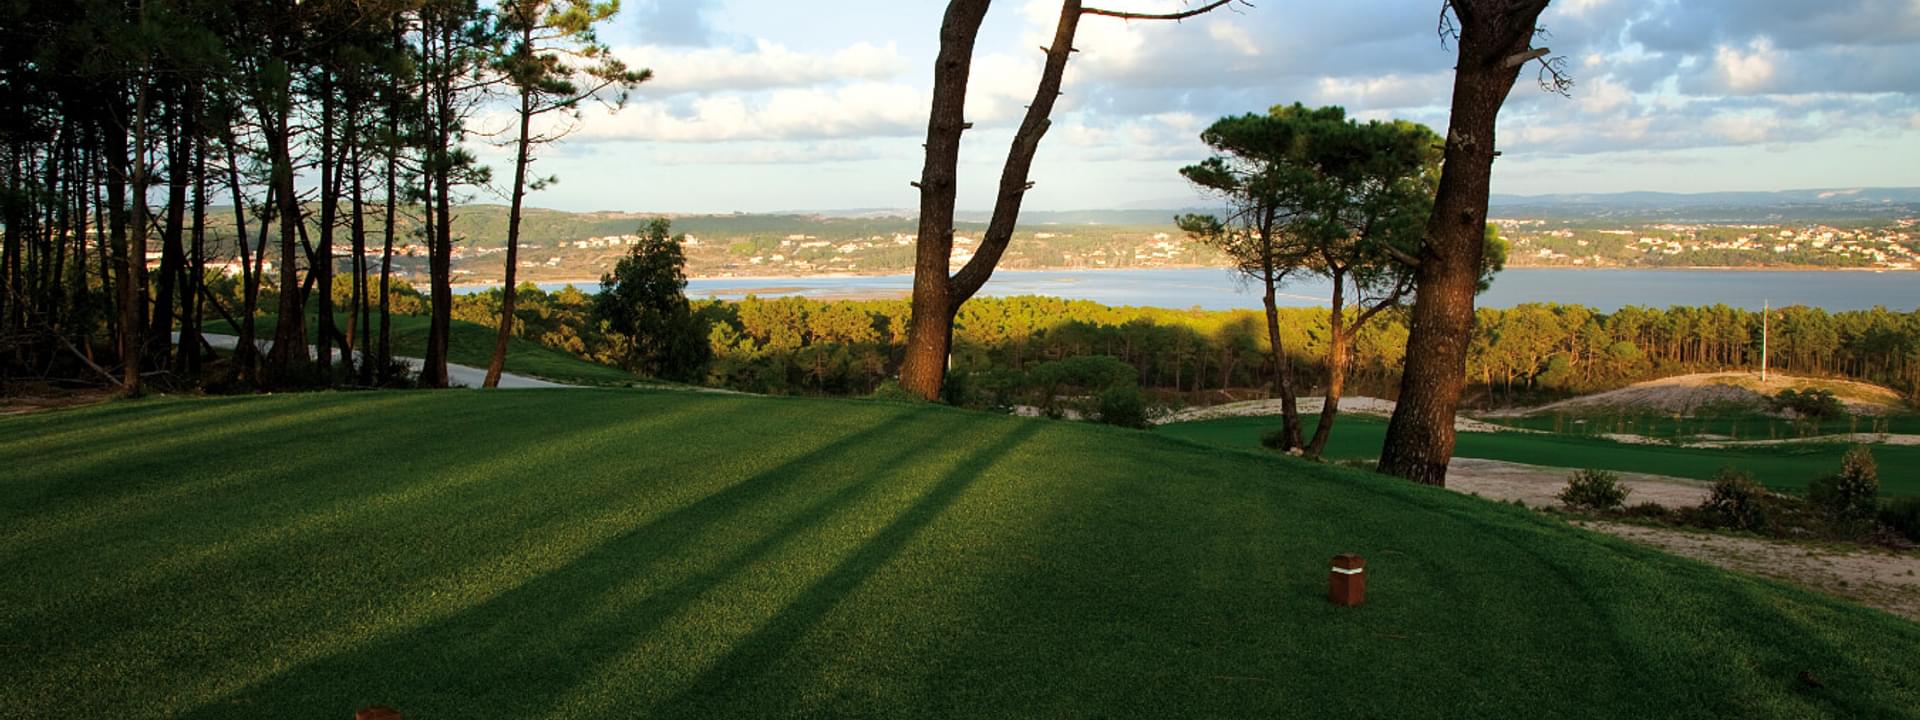 Les 6 meilleurs terrains de golf dans le Centre du Portugal : une liste de premier plan de destinations de golf